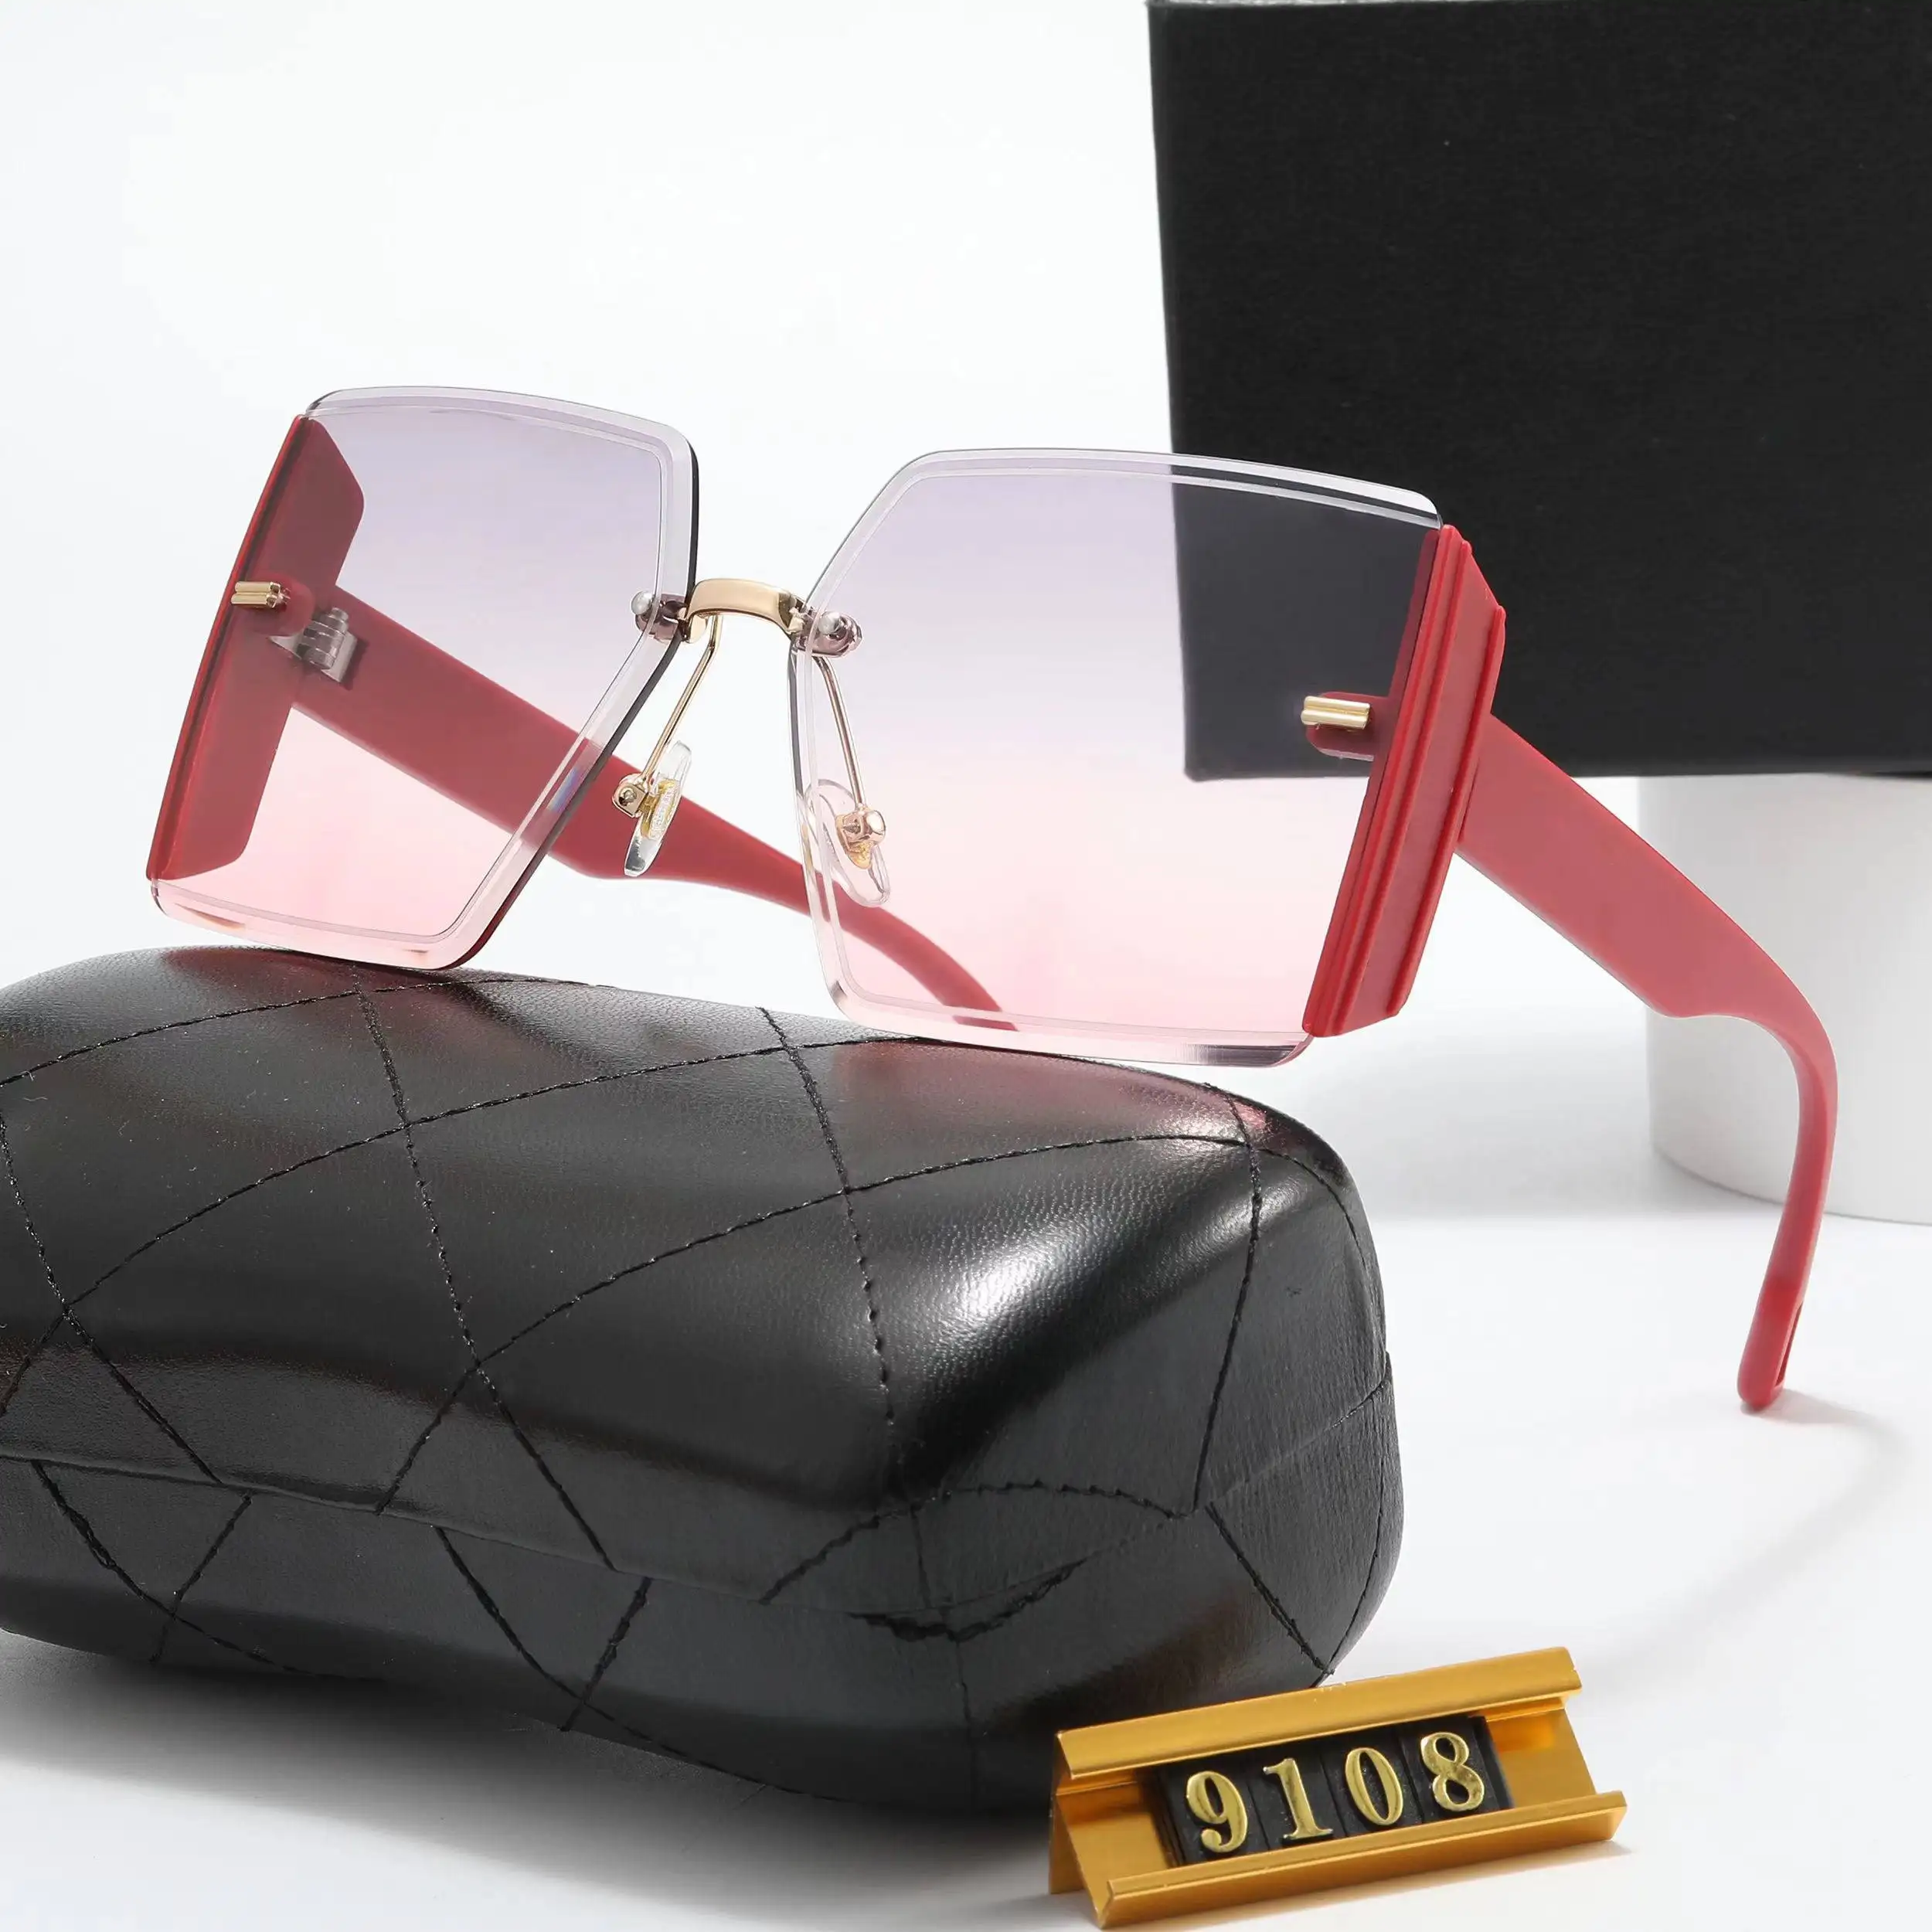 9108 производители продают еженедельные скидки дизайнерские солнцезащитные очки известные бренды для мужчин и женщин Роскошные брендовые солнцезащитные очки цена